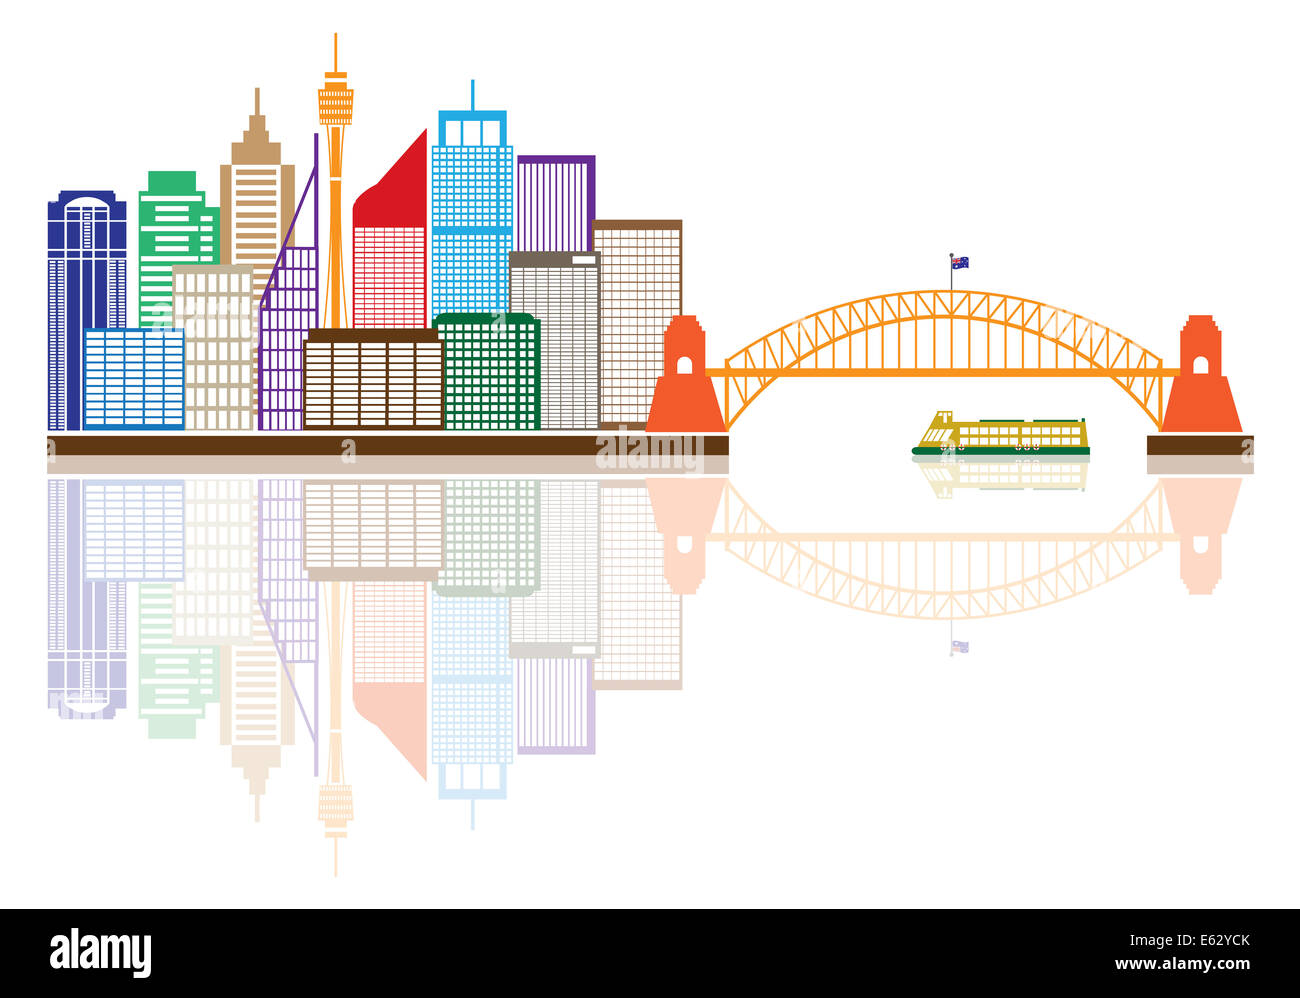 Australie Sydney Harbour Bridge Repères Skyline avec réflexion couleur isolé sur fond blanc Illustration Banque D'Images